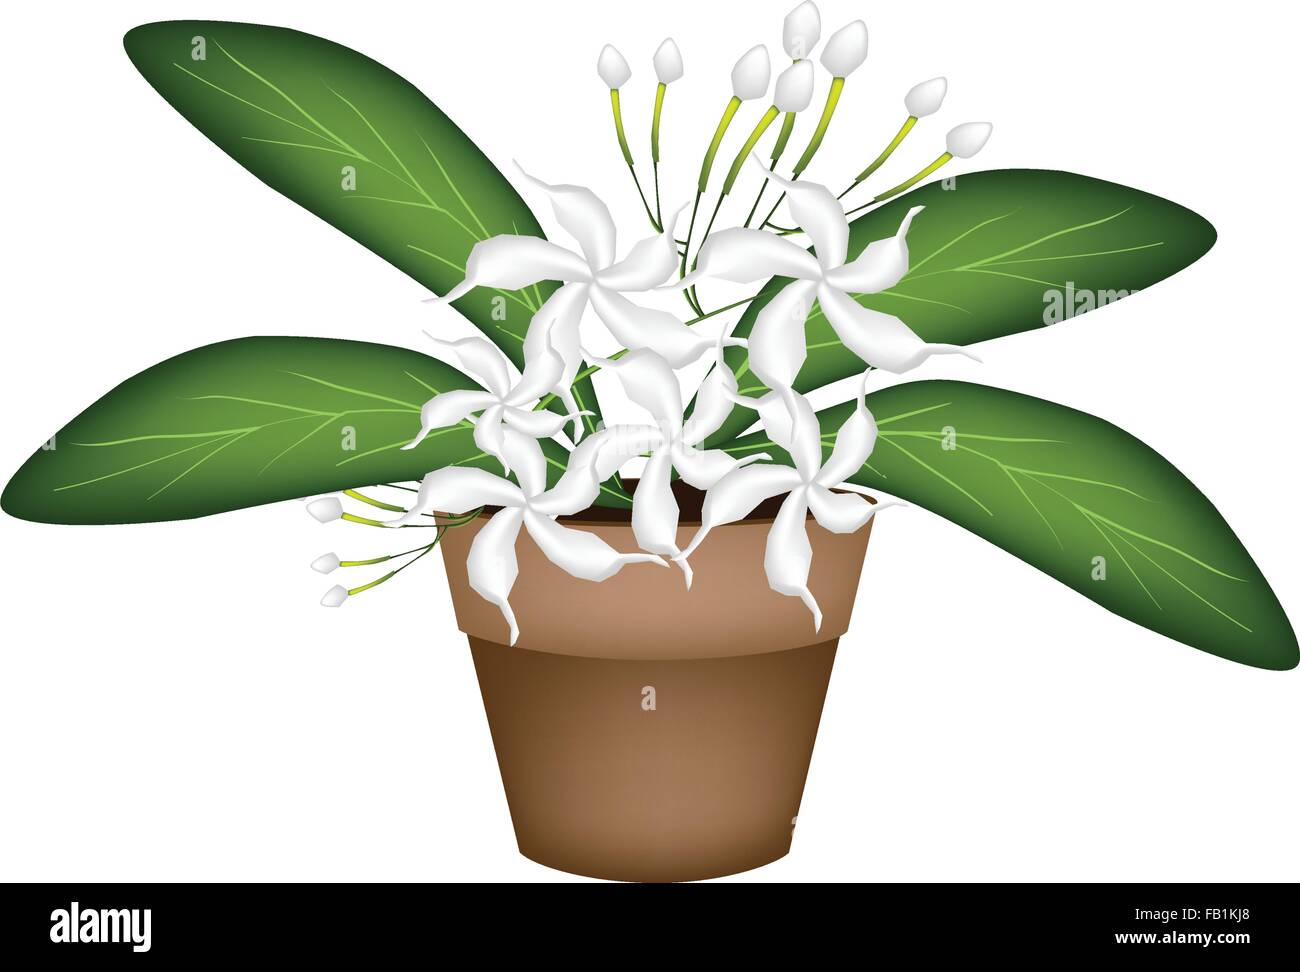 Beautiful Flower, Illustration of Lovely White Common Gardenias or Cape Jasmine Flowers in Terracotta Flower Pot for Garden Deco Stock Vector